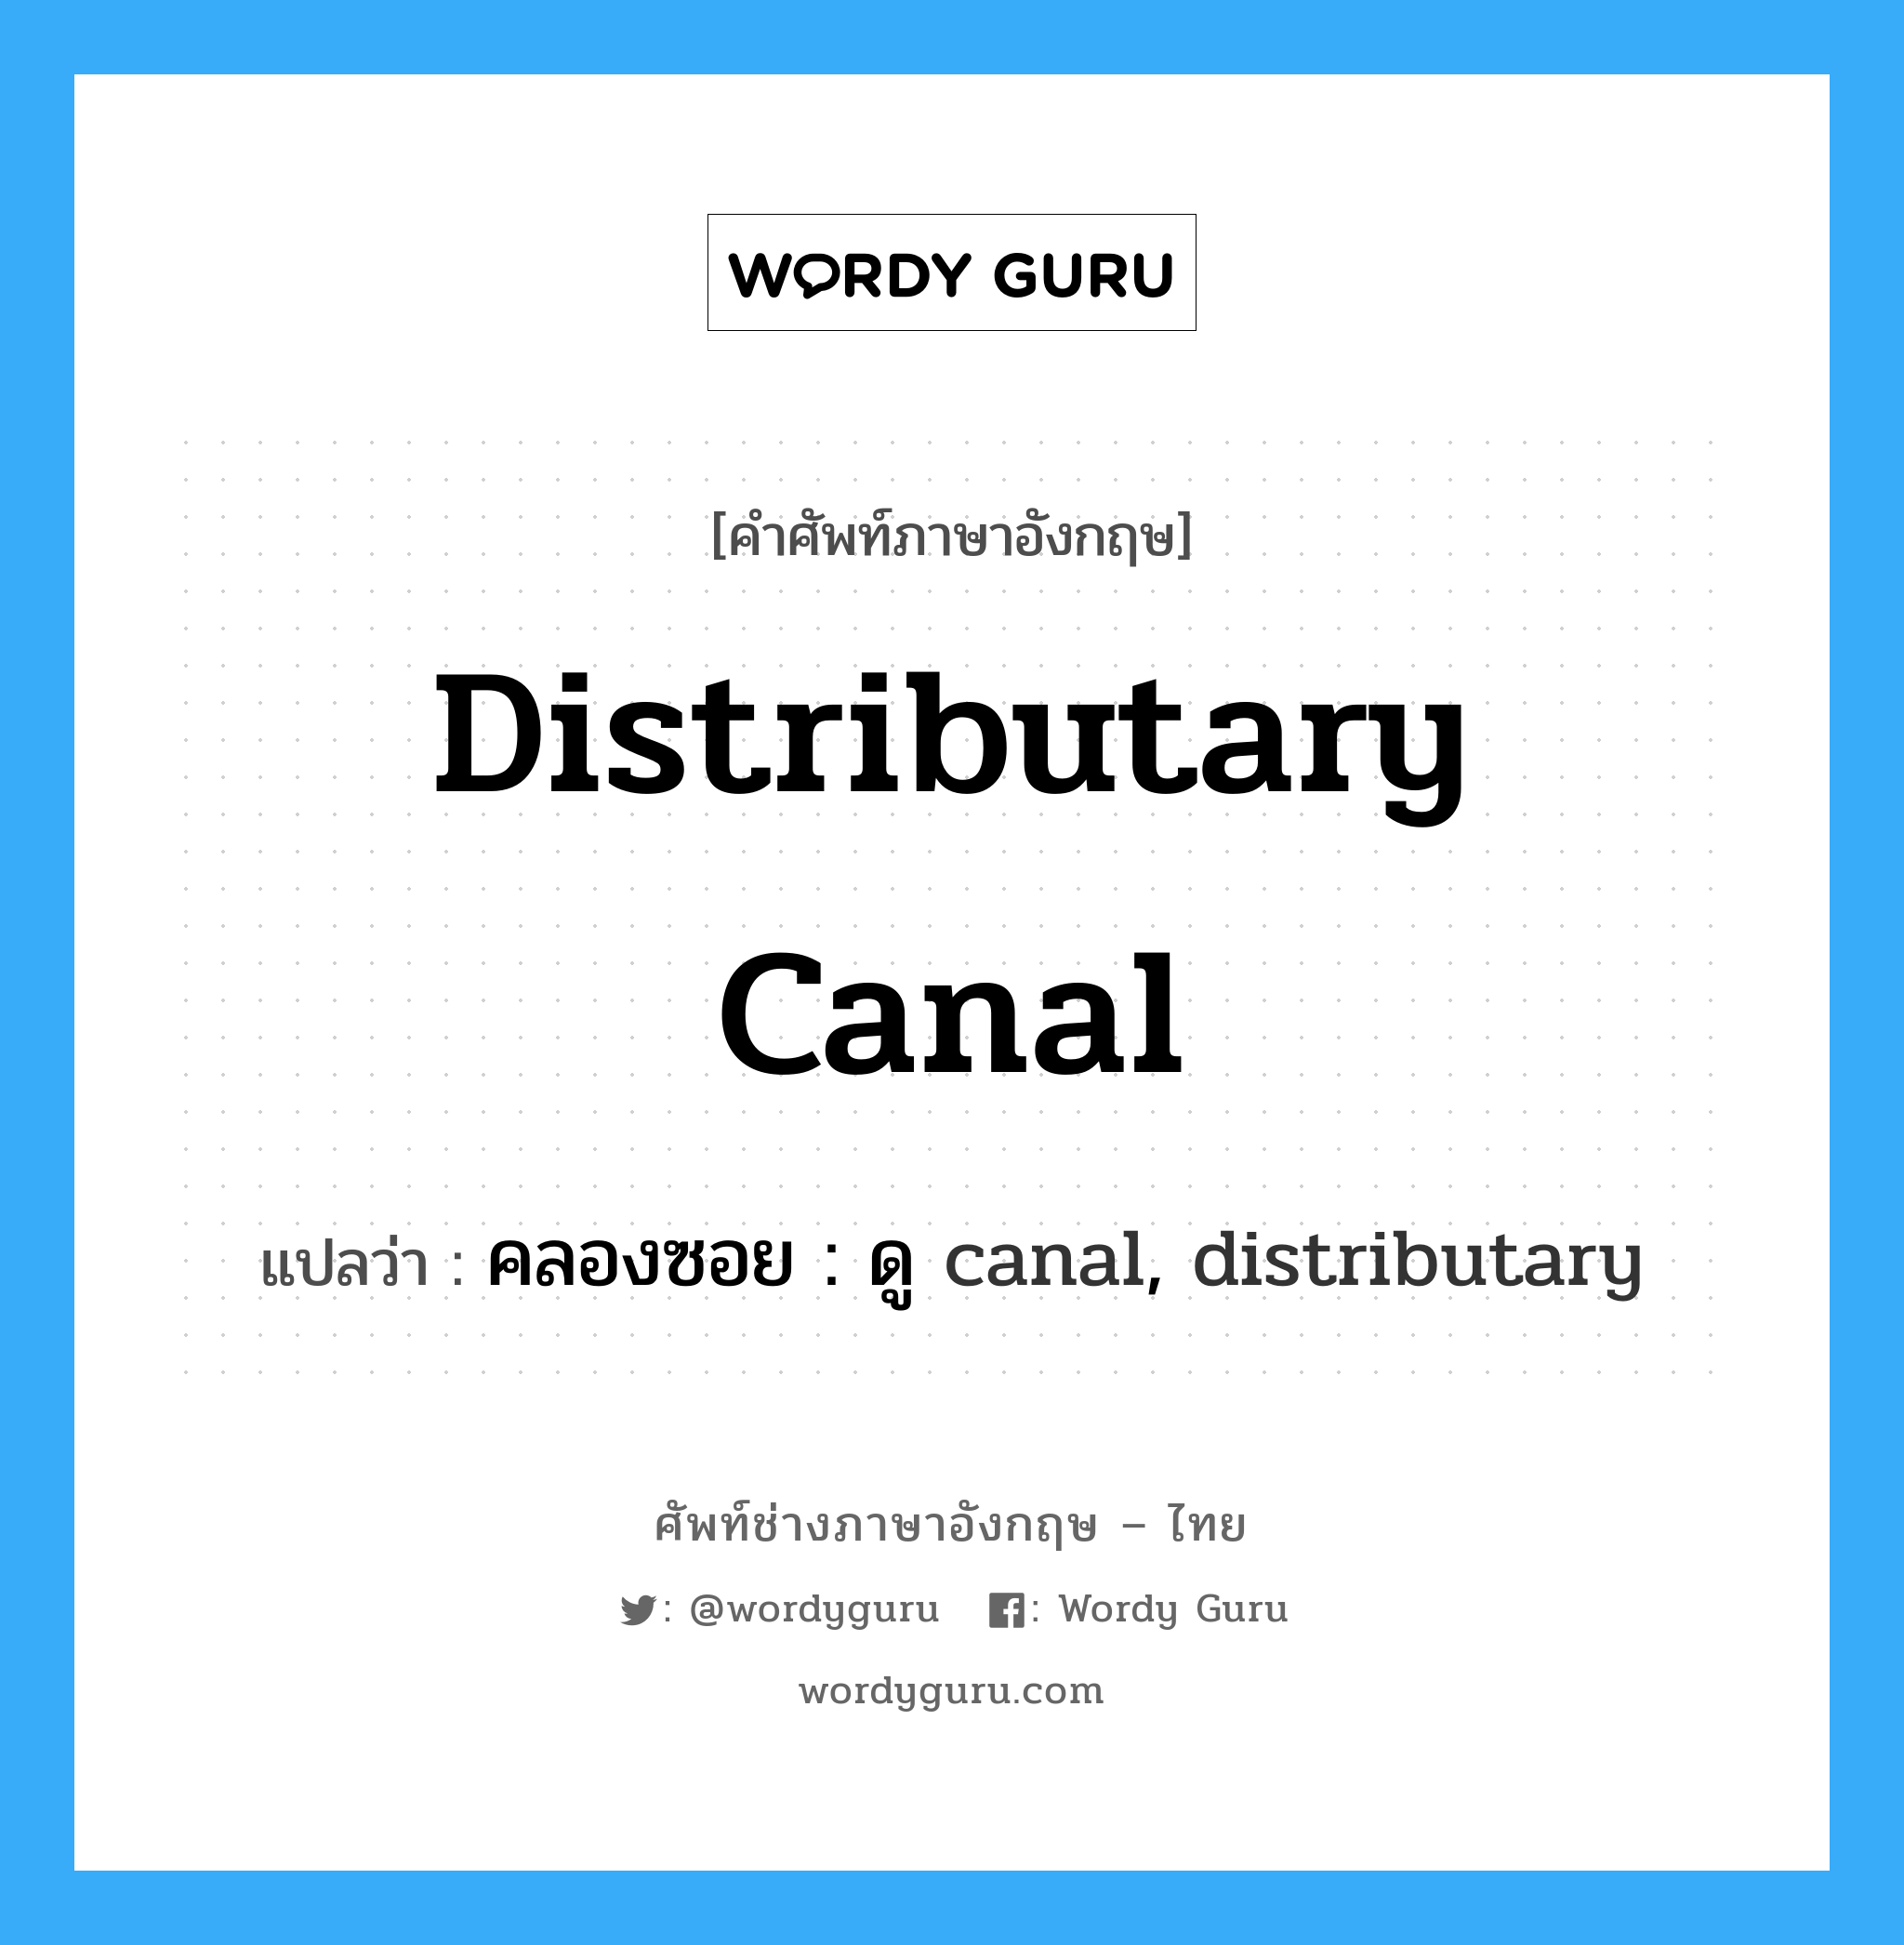 คลองซอย : ดู canal, distributary ภาษาอังกฤษ?, คำศัพท์ช่างภาษาอังกฤษ - ไทย คลองซอย : ดู canal, distributary คำศัพท์ภาษาอังกฤษ คลองซอย : ดู canal, distributary แปลว่า distributary canal